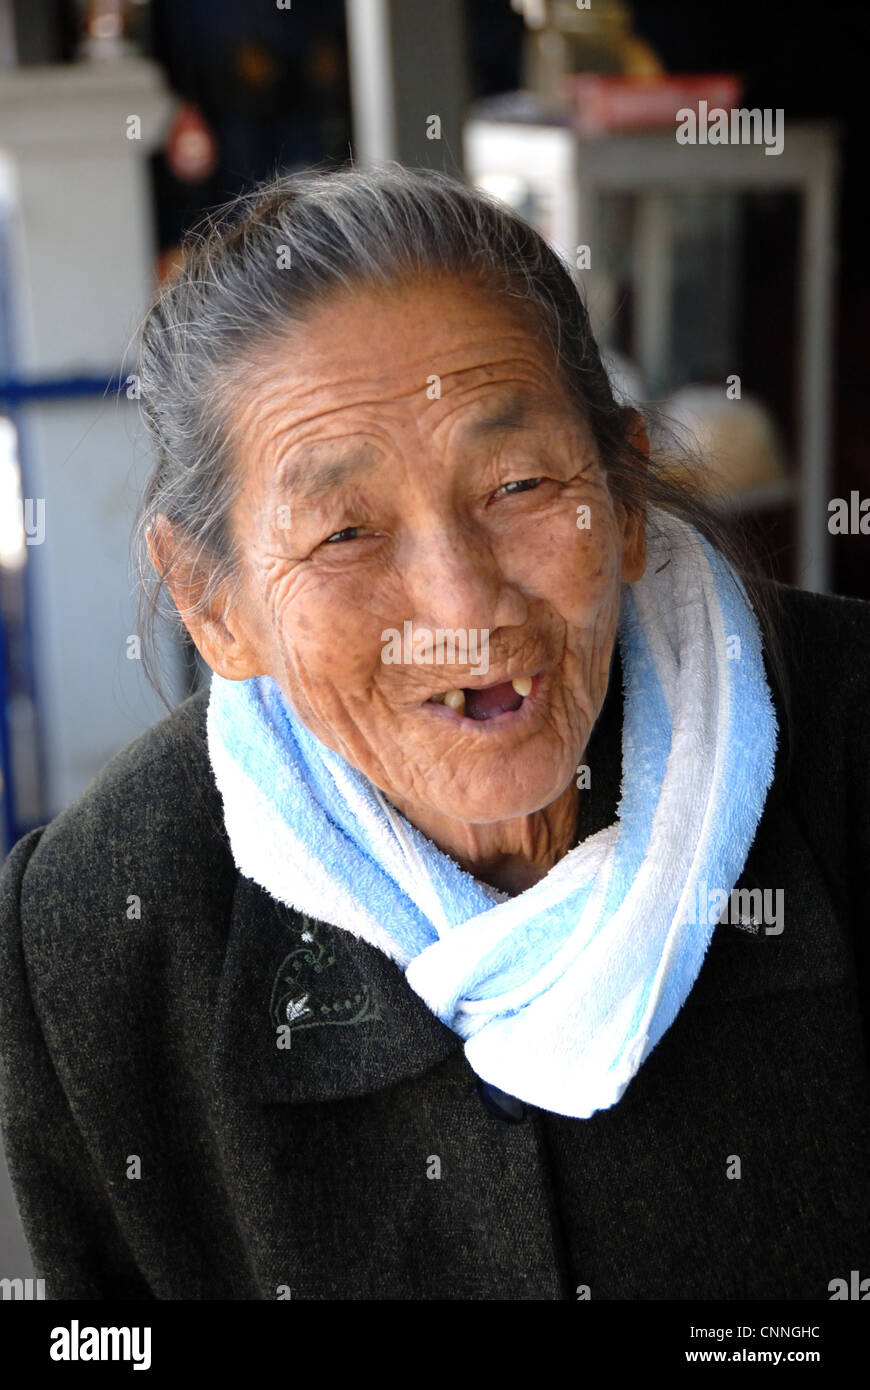 Personnes âgées dame thaïlandaise dans ngey Love Story sur17/01/2009 love story ngey dans Chiang Mai, Thaïlande Banque D'Images